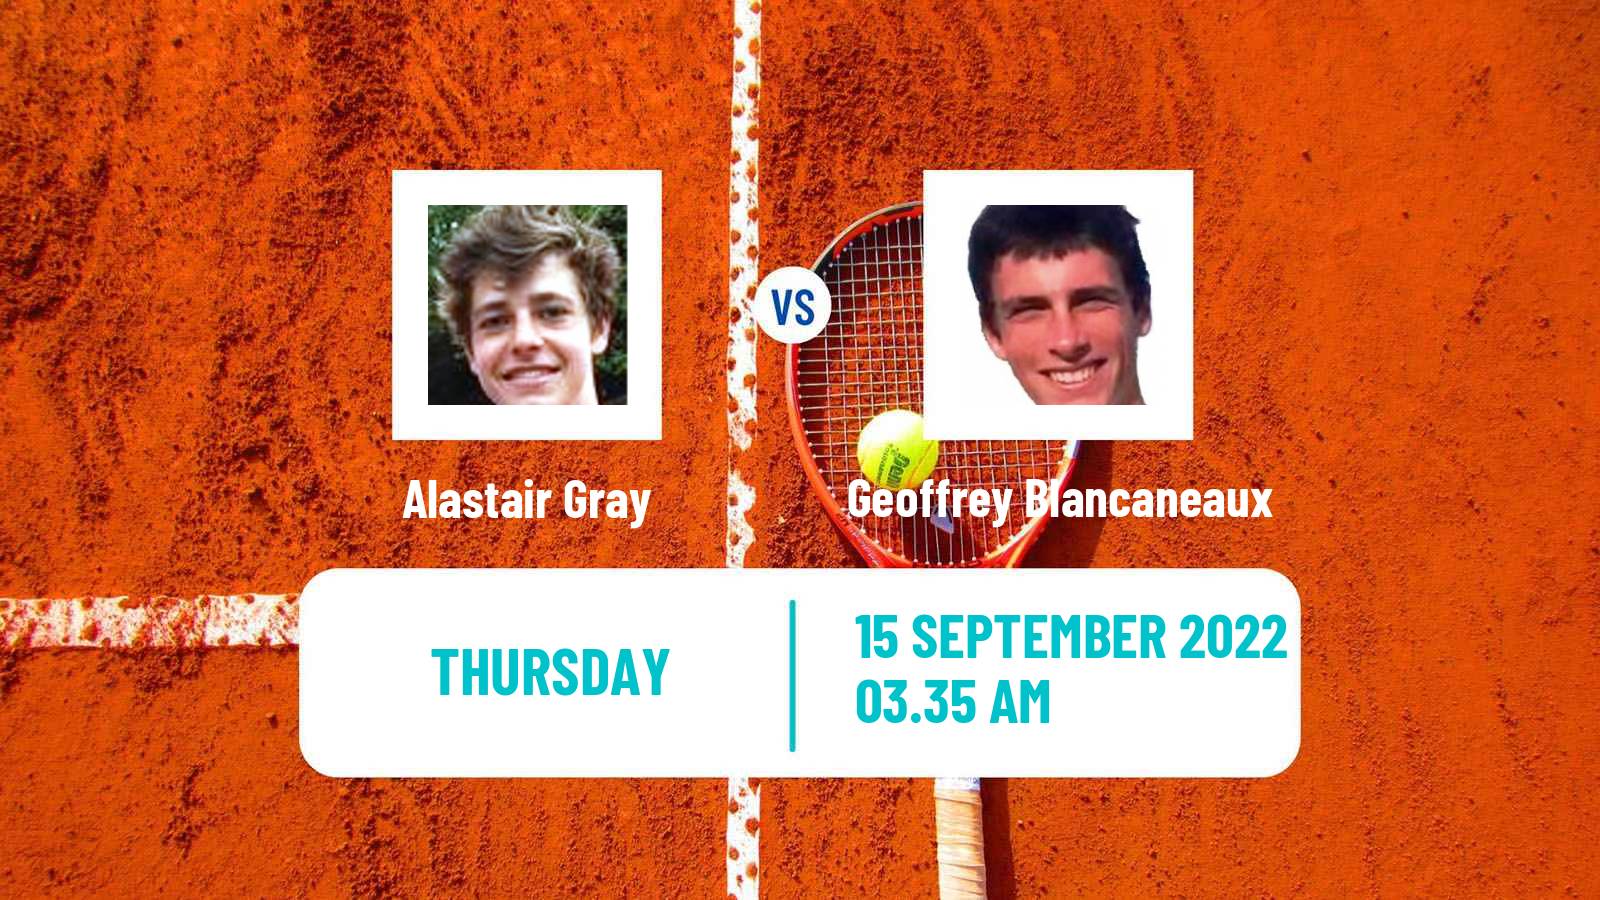 Tennis ATP Challenger Alastair Gray - Geoffrey Blancaneaux